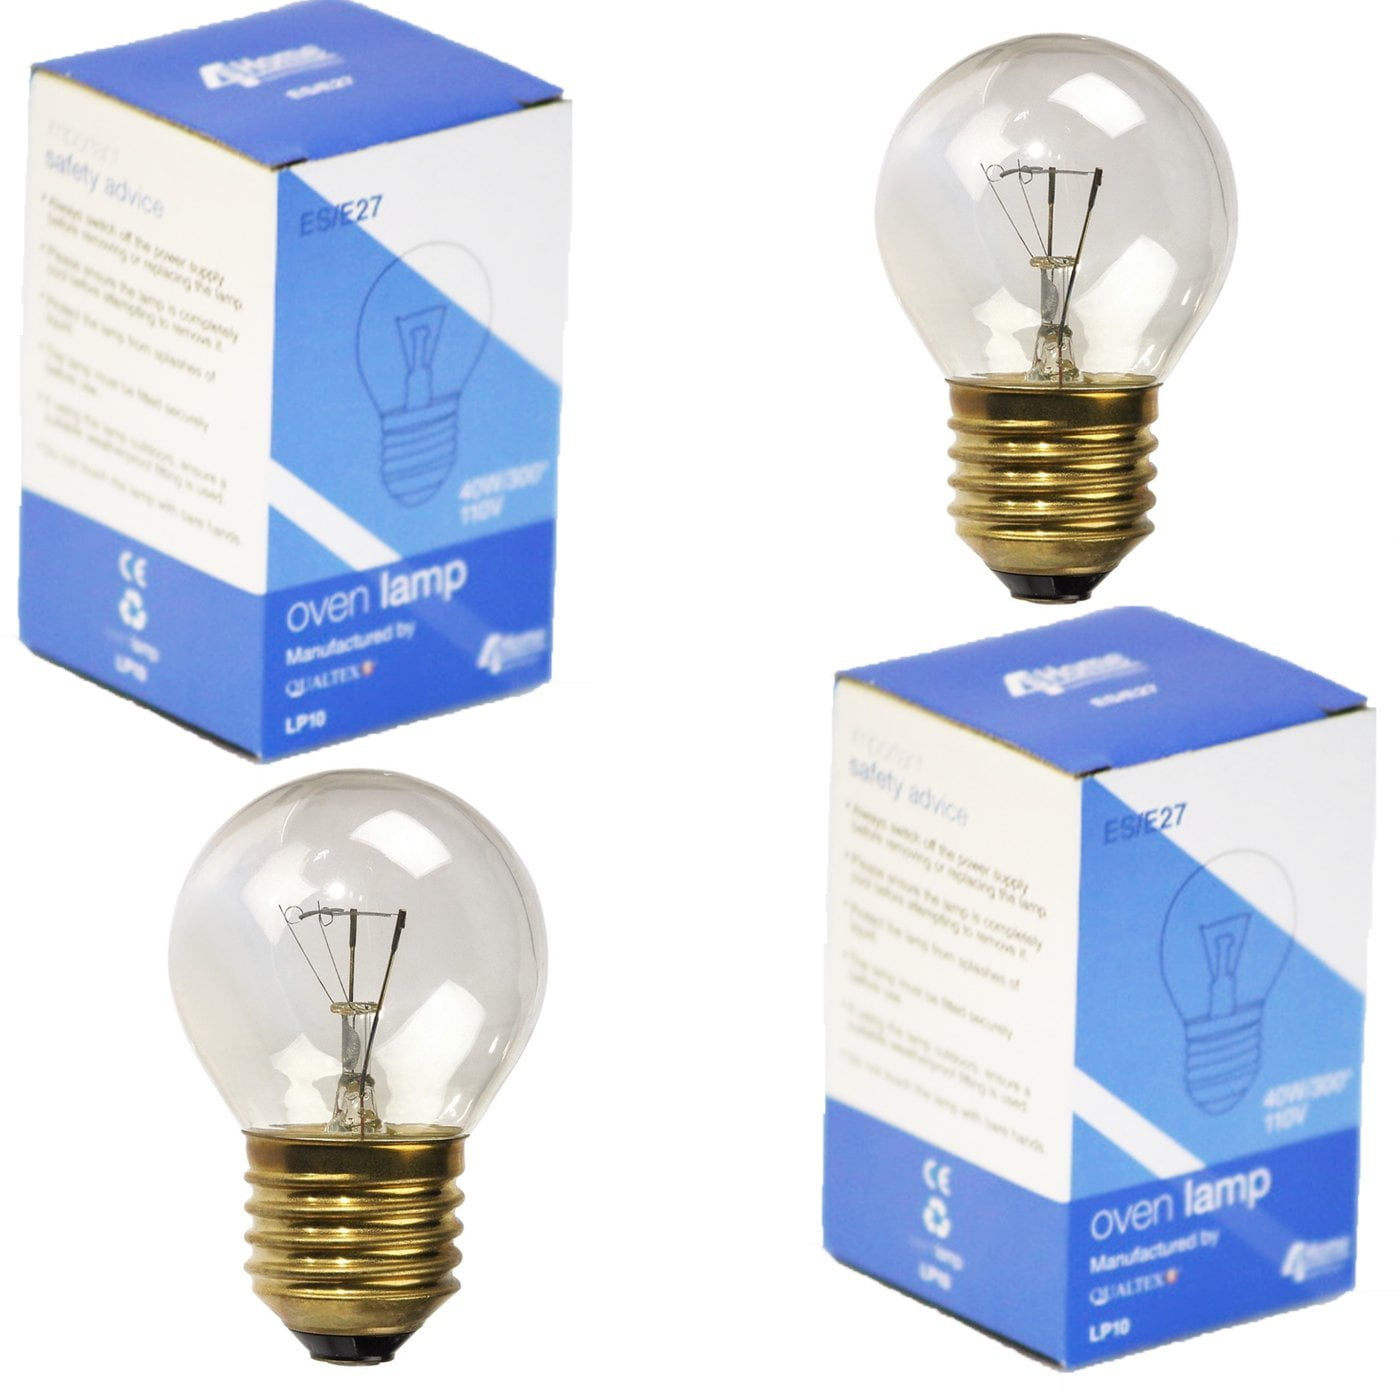 Jensense LED 40 watt Light Bulbs Replacement Appliance Fridge